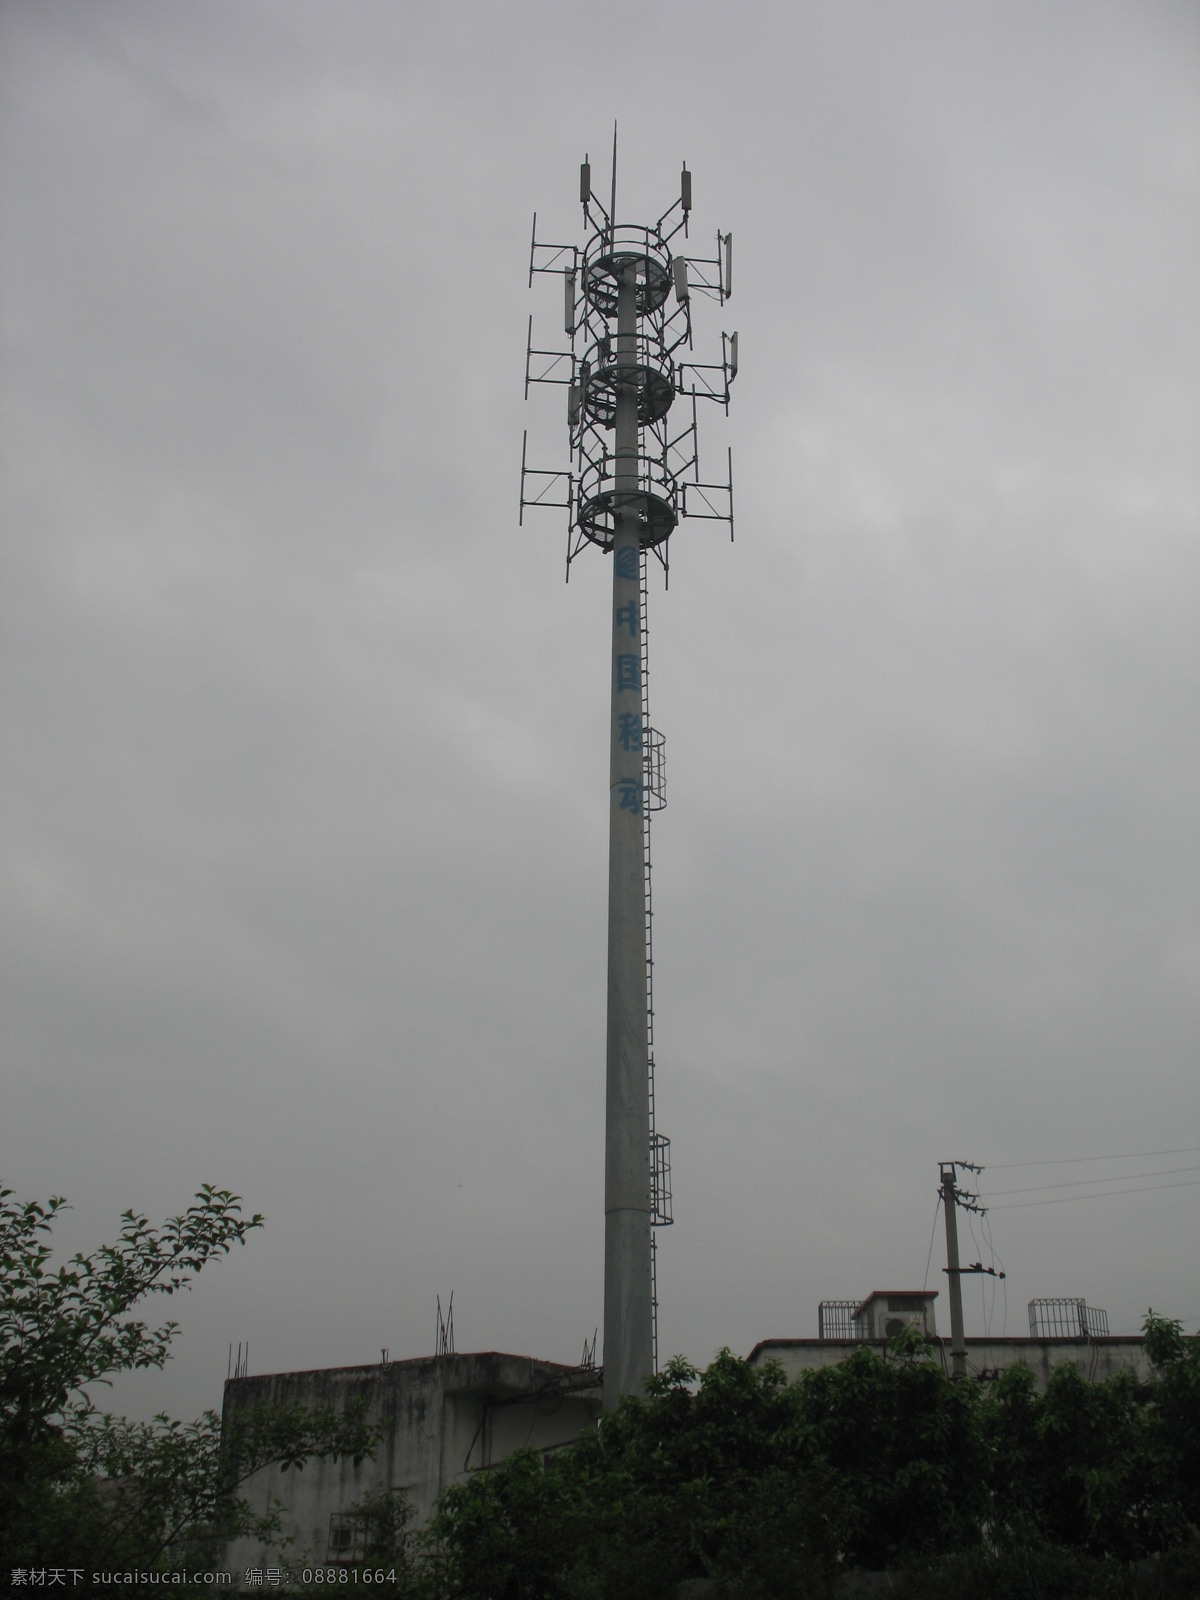 信号塔 漳州平和 中国移动 接收塔 发射塔 灰蒙蒙的天空 塔台 信号发射塔 通讯设施 科学研究 现代科技